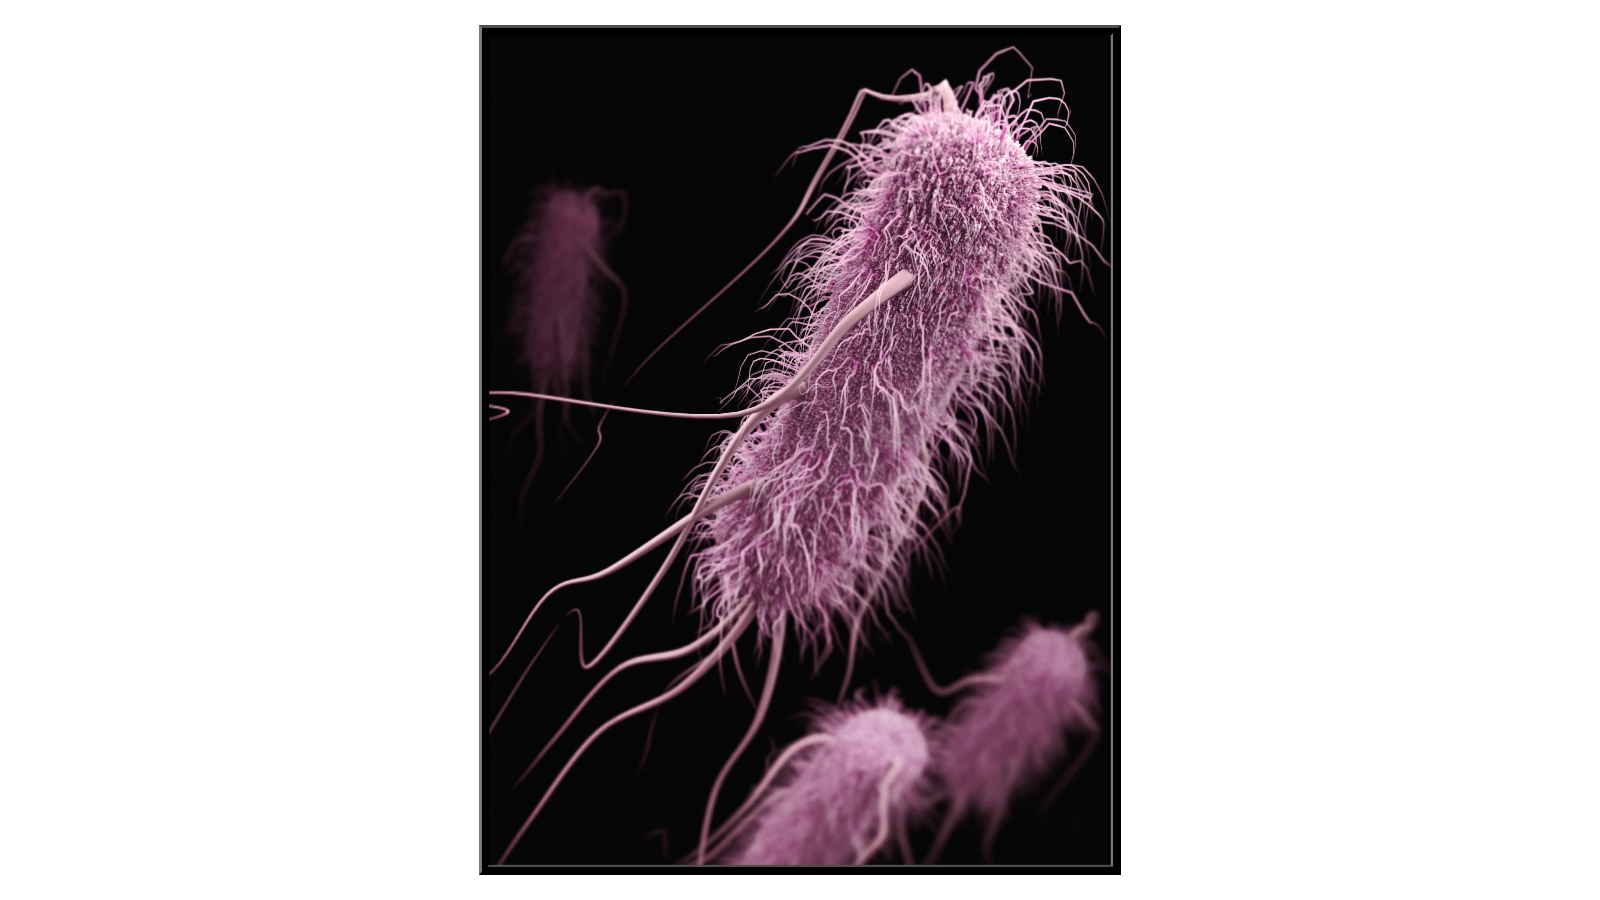 Beneficial Escherichia Coli bacteria